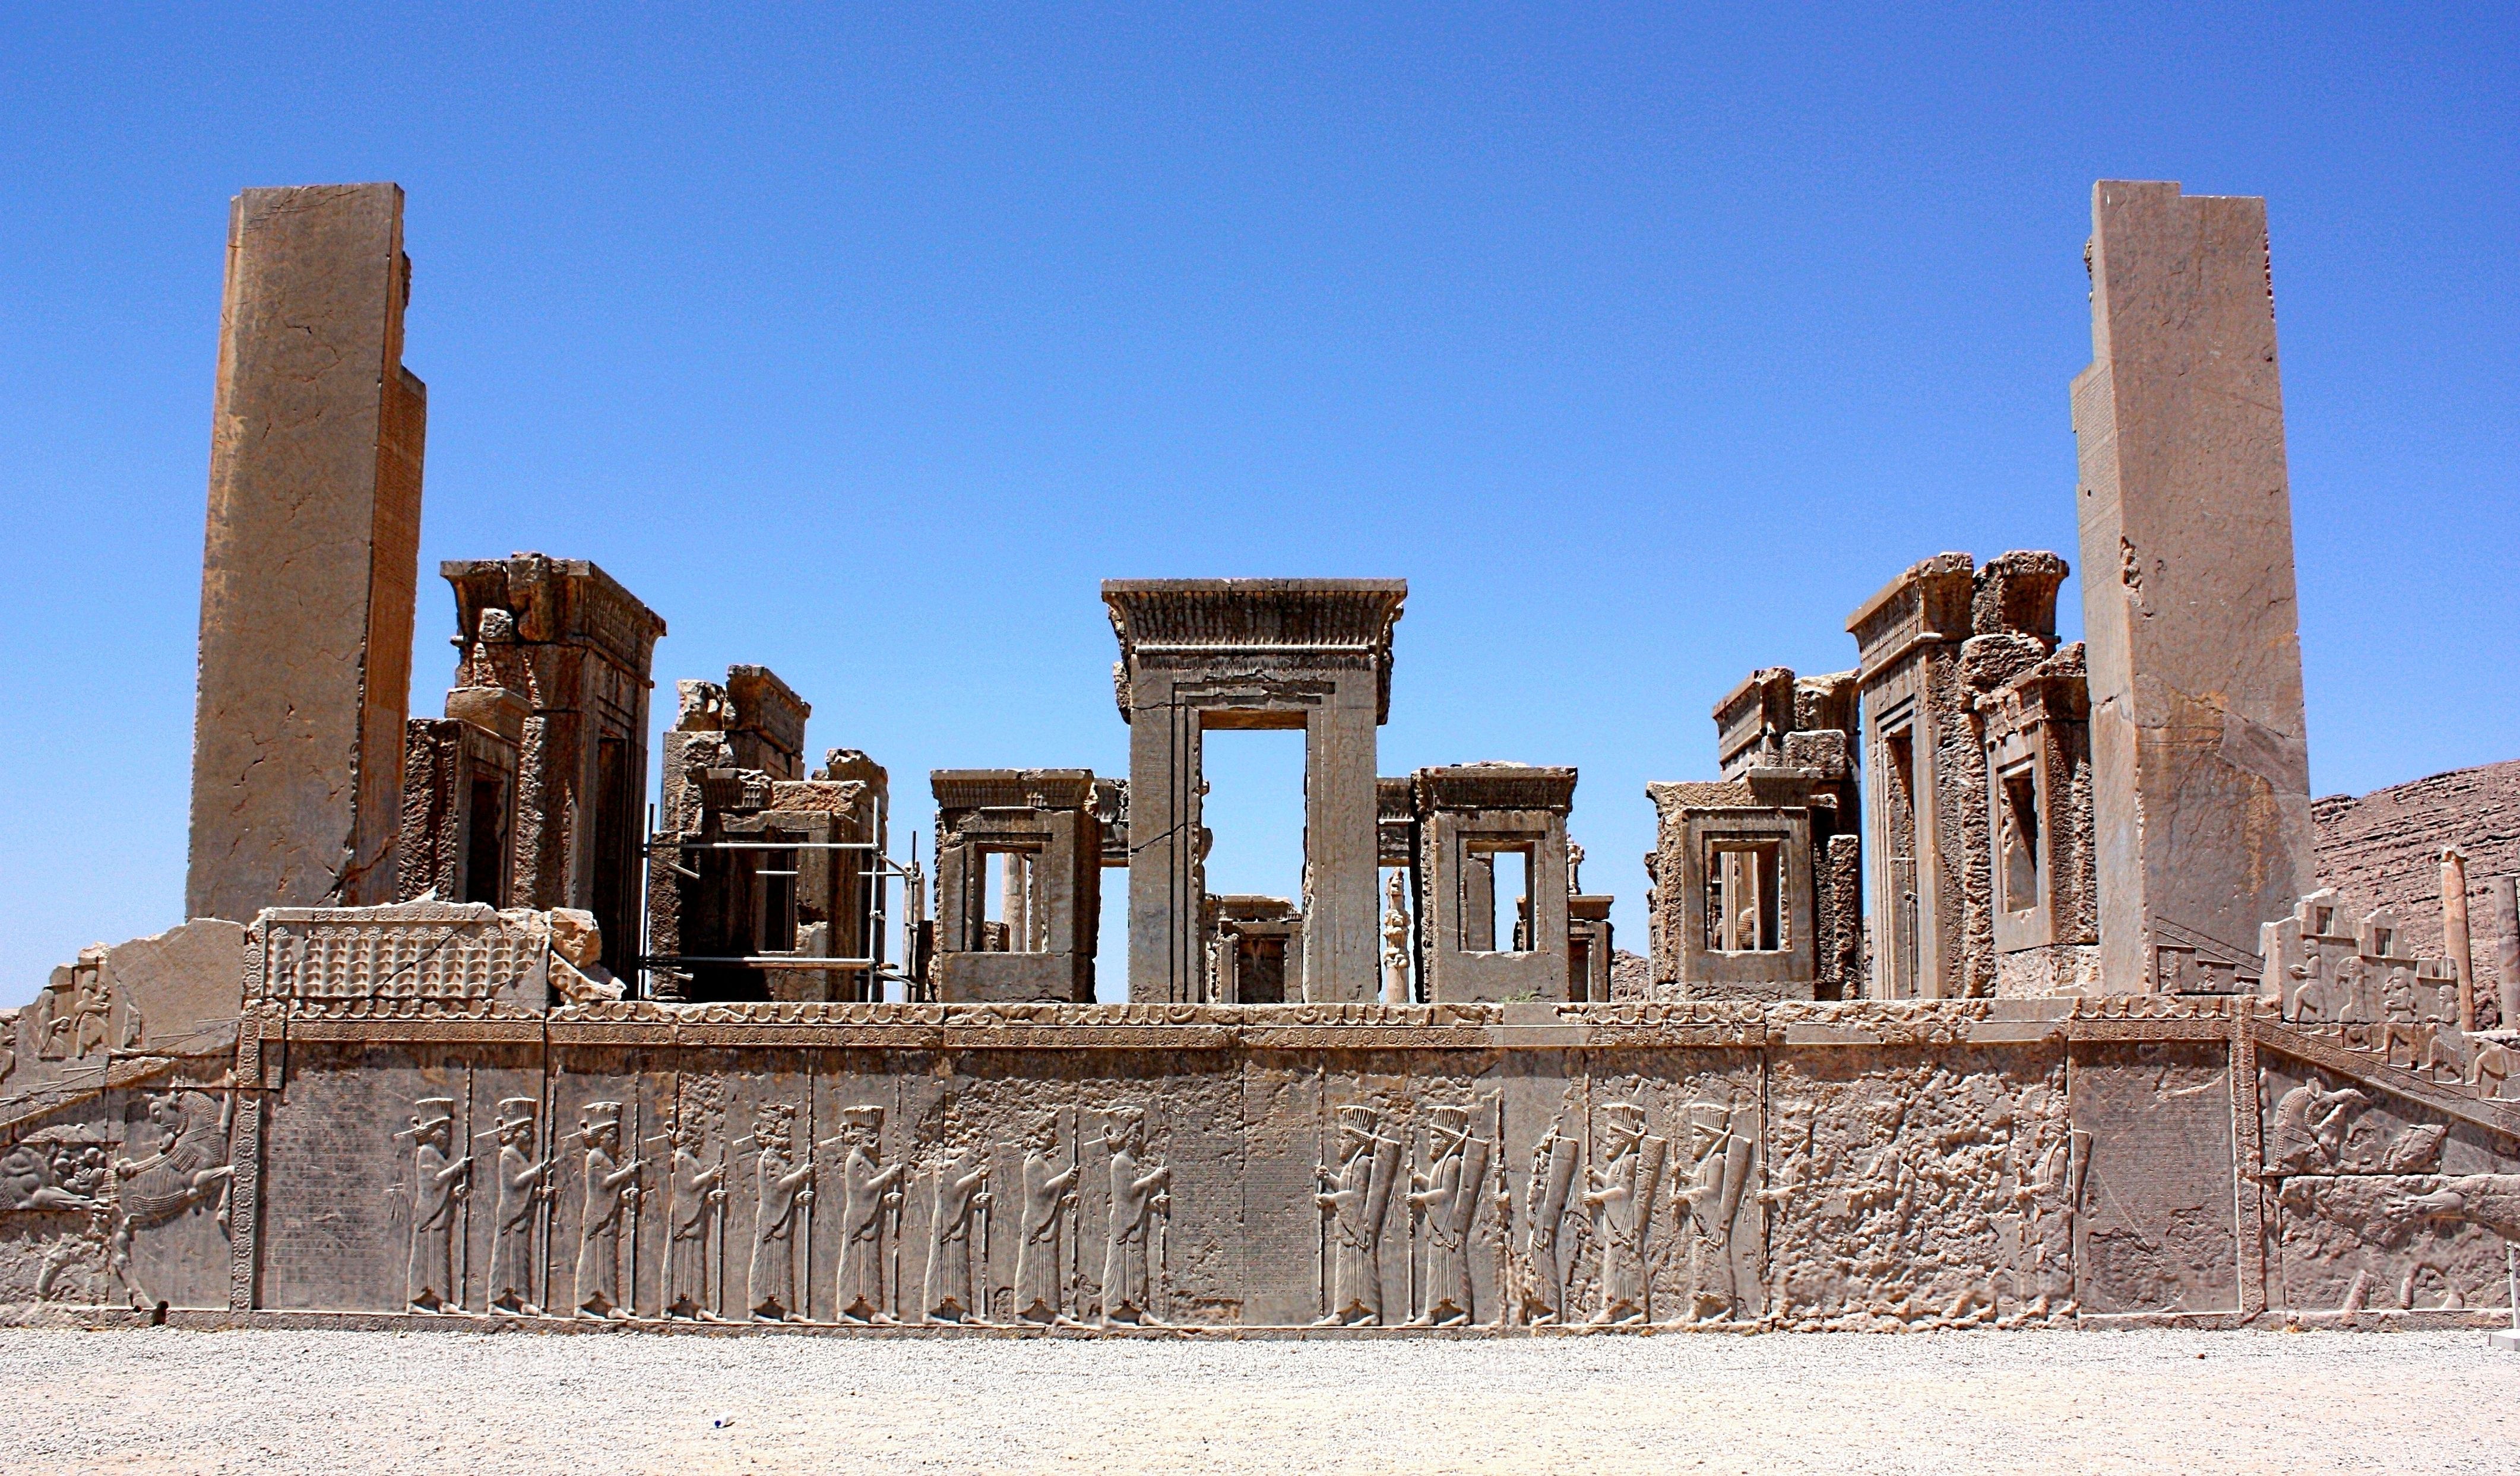 Achaemenids (Persepolis) of Darius (Throne Hall). Ancient